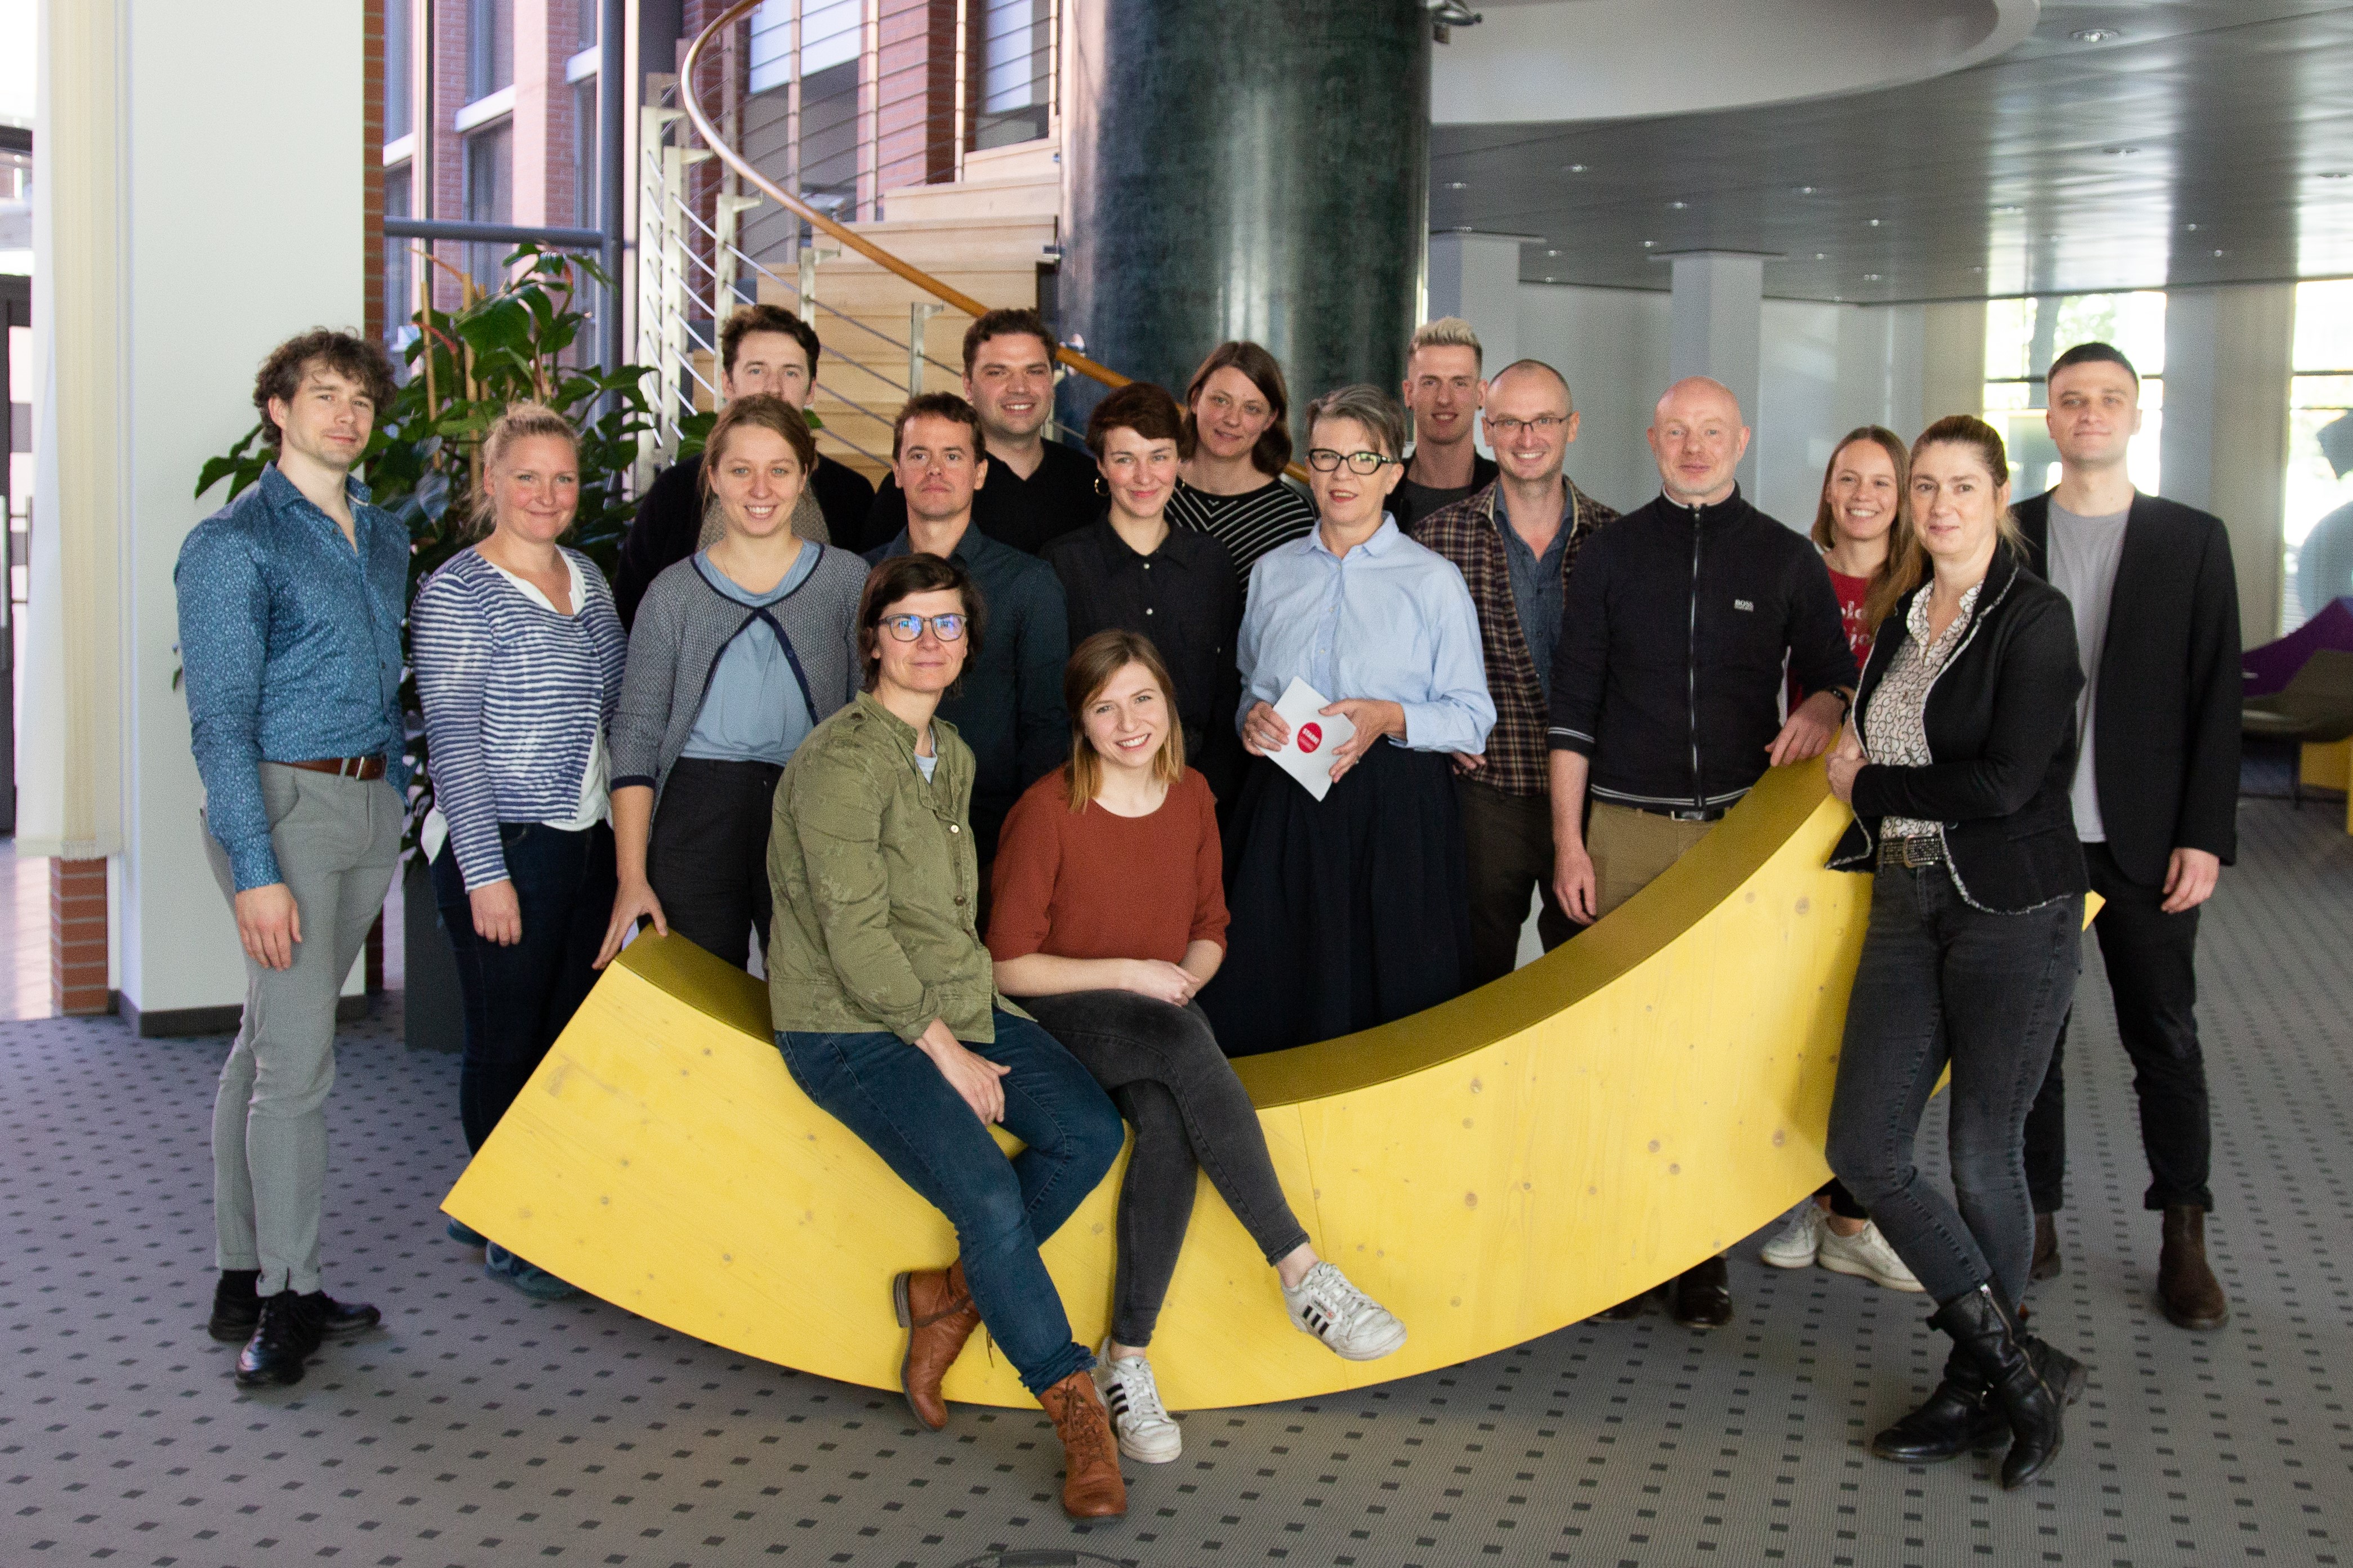 Zum zweiten Jahrestag des Titelgewinns stellte sich das Team der Kulturhauptstadt GmbH einer breiteren Öffentlichkeit vor. Das Team um Stefan Schmidtke und Andrea Pier wächst weiter und wird in den kommenden Monaten die Projekte voranbringen.